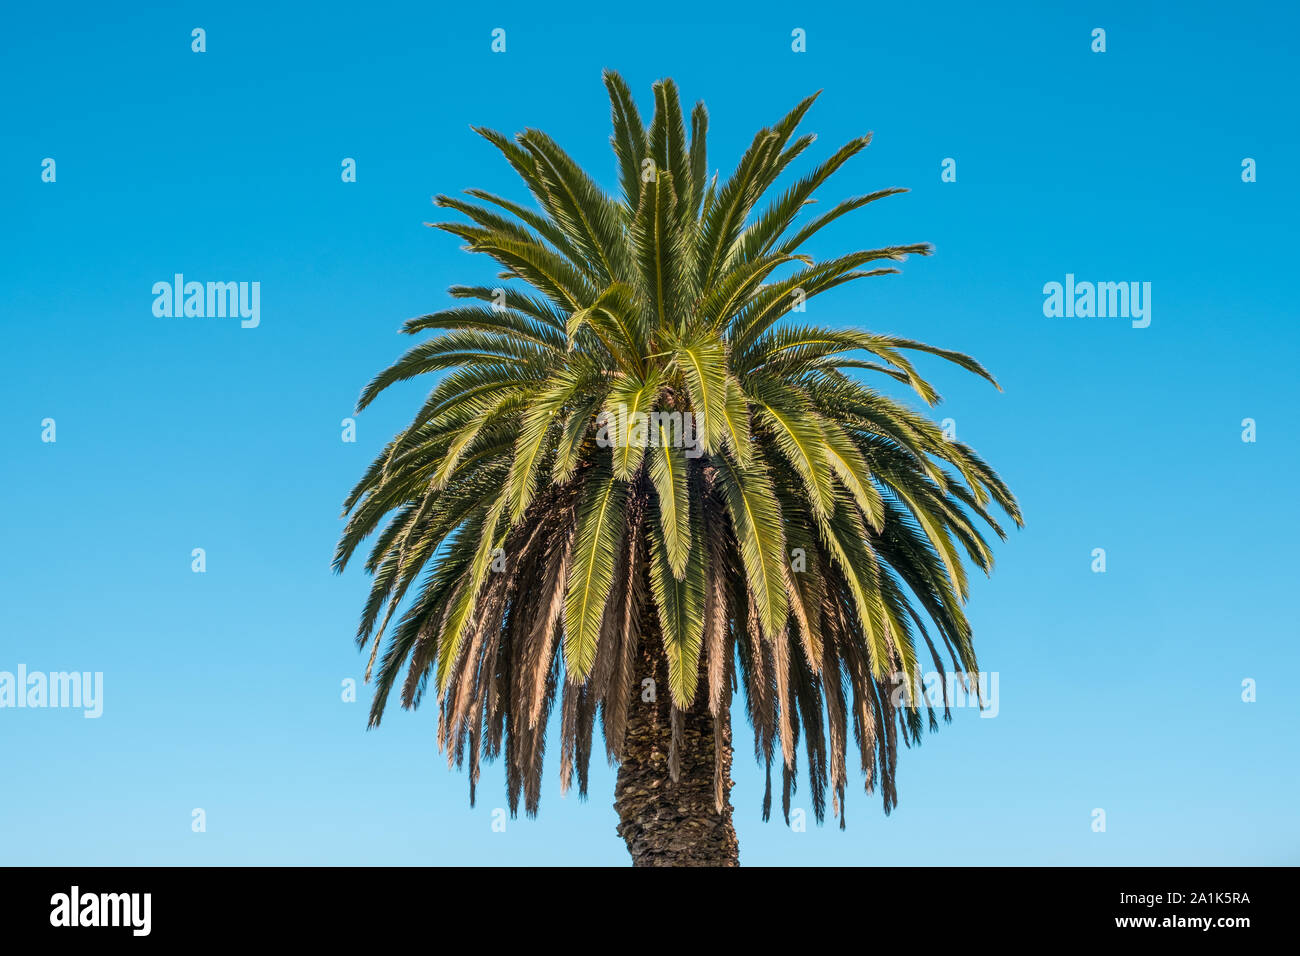 Palmen am blauen Himmel Hintergrund isoliert - Palmera canariensis Stockfoto